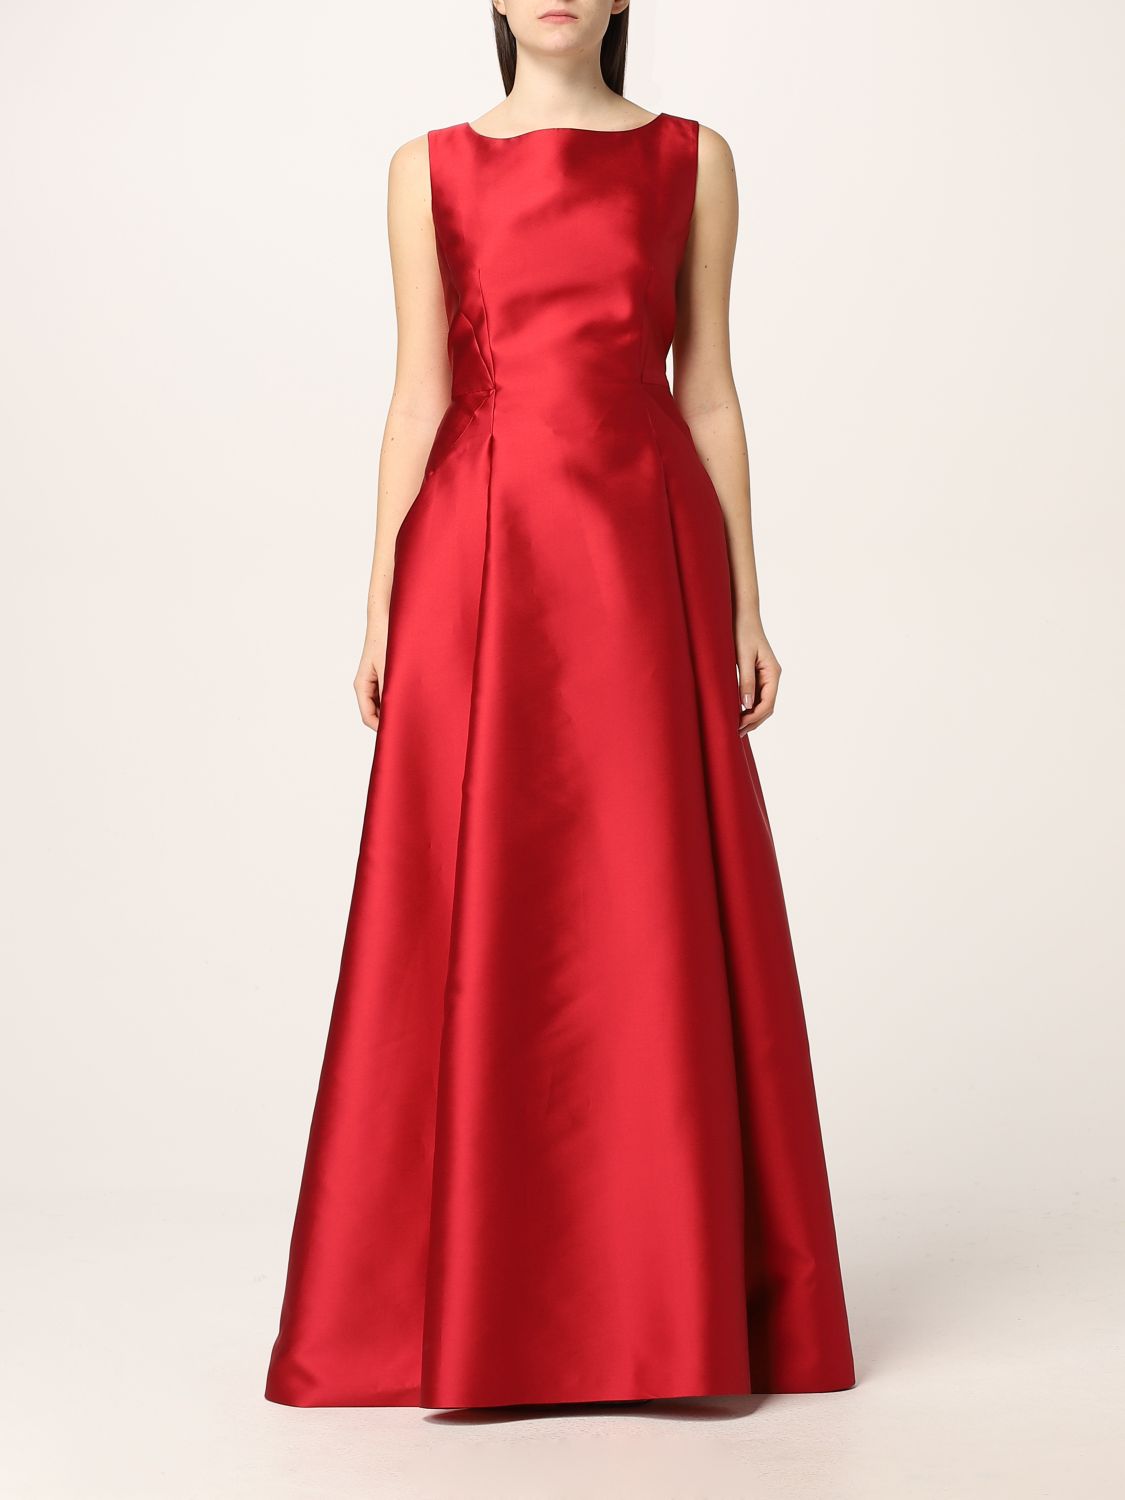 ALBERTA FERRETTI: duchesse satin dress - Red | Alberta Ferretti dress ...